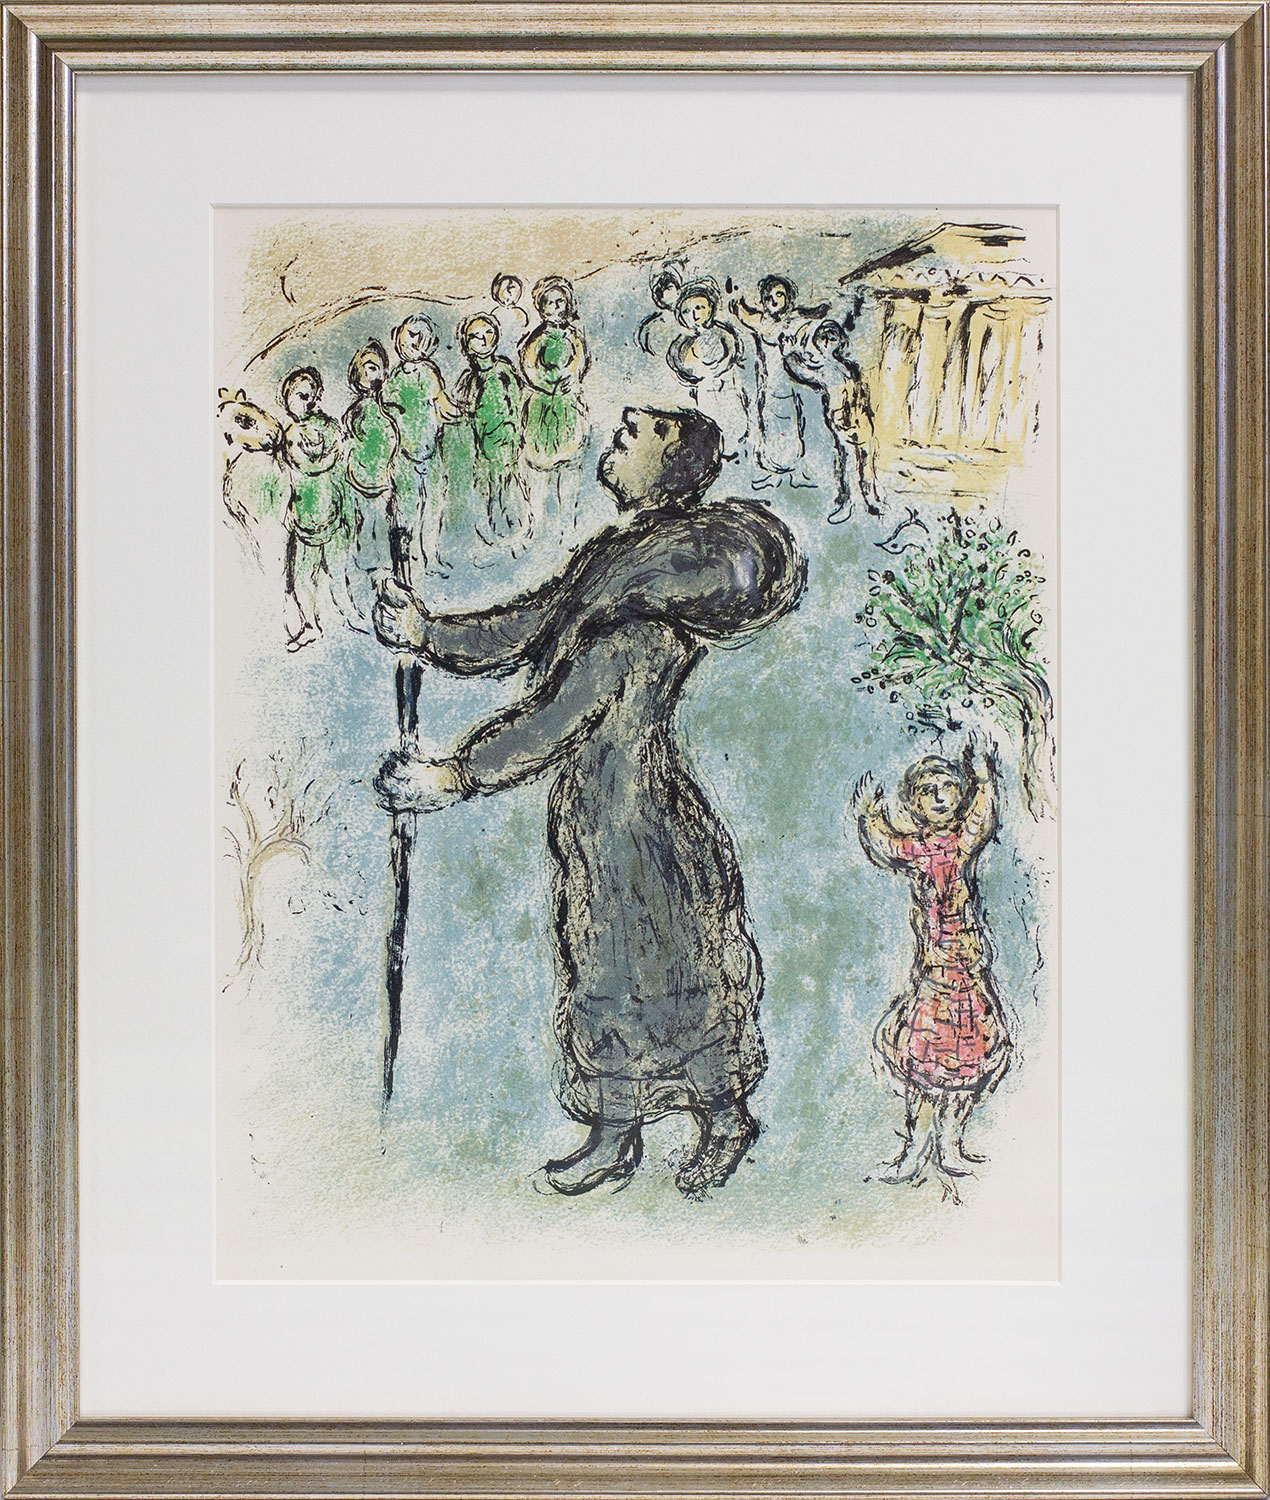 Bild "Die Odyssee - Odysseus als Bettler verkleidet" (1989), gerahmt by Marc Chagall